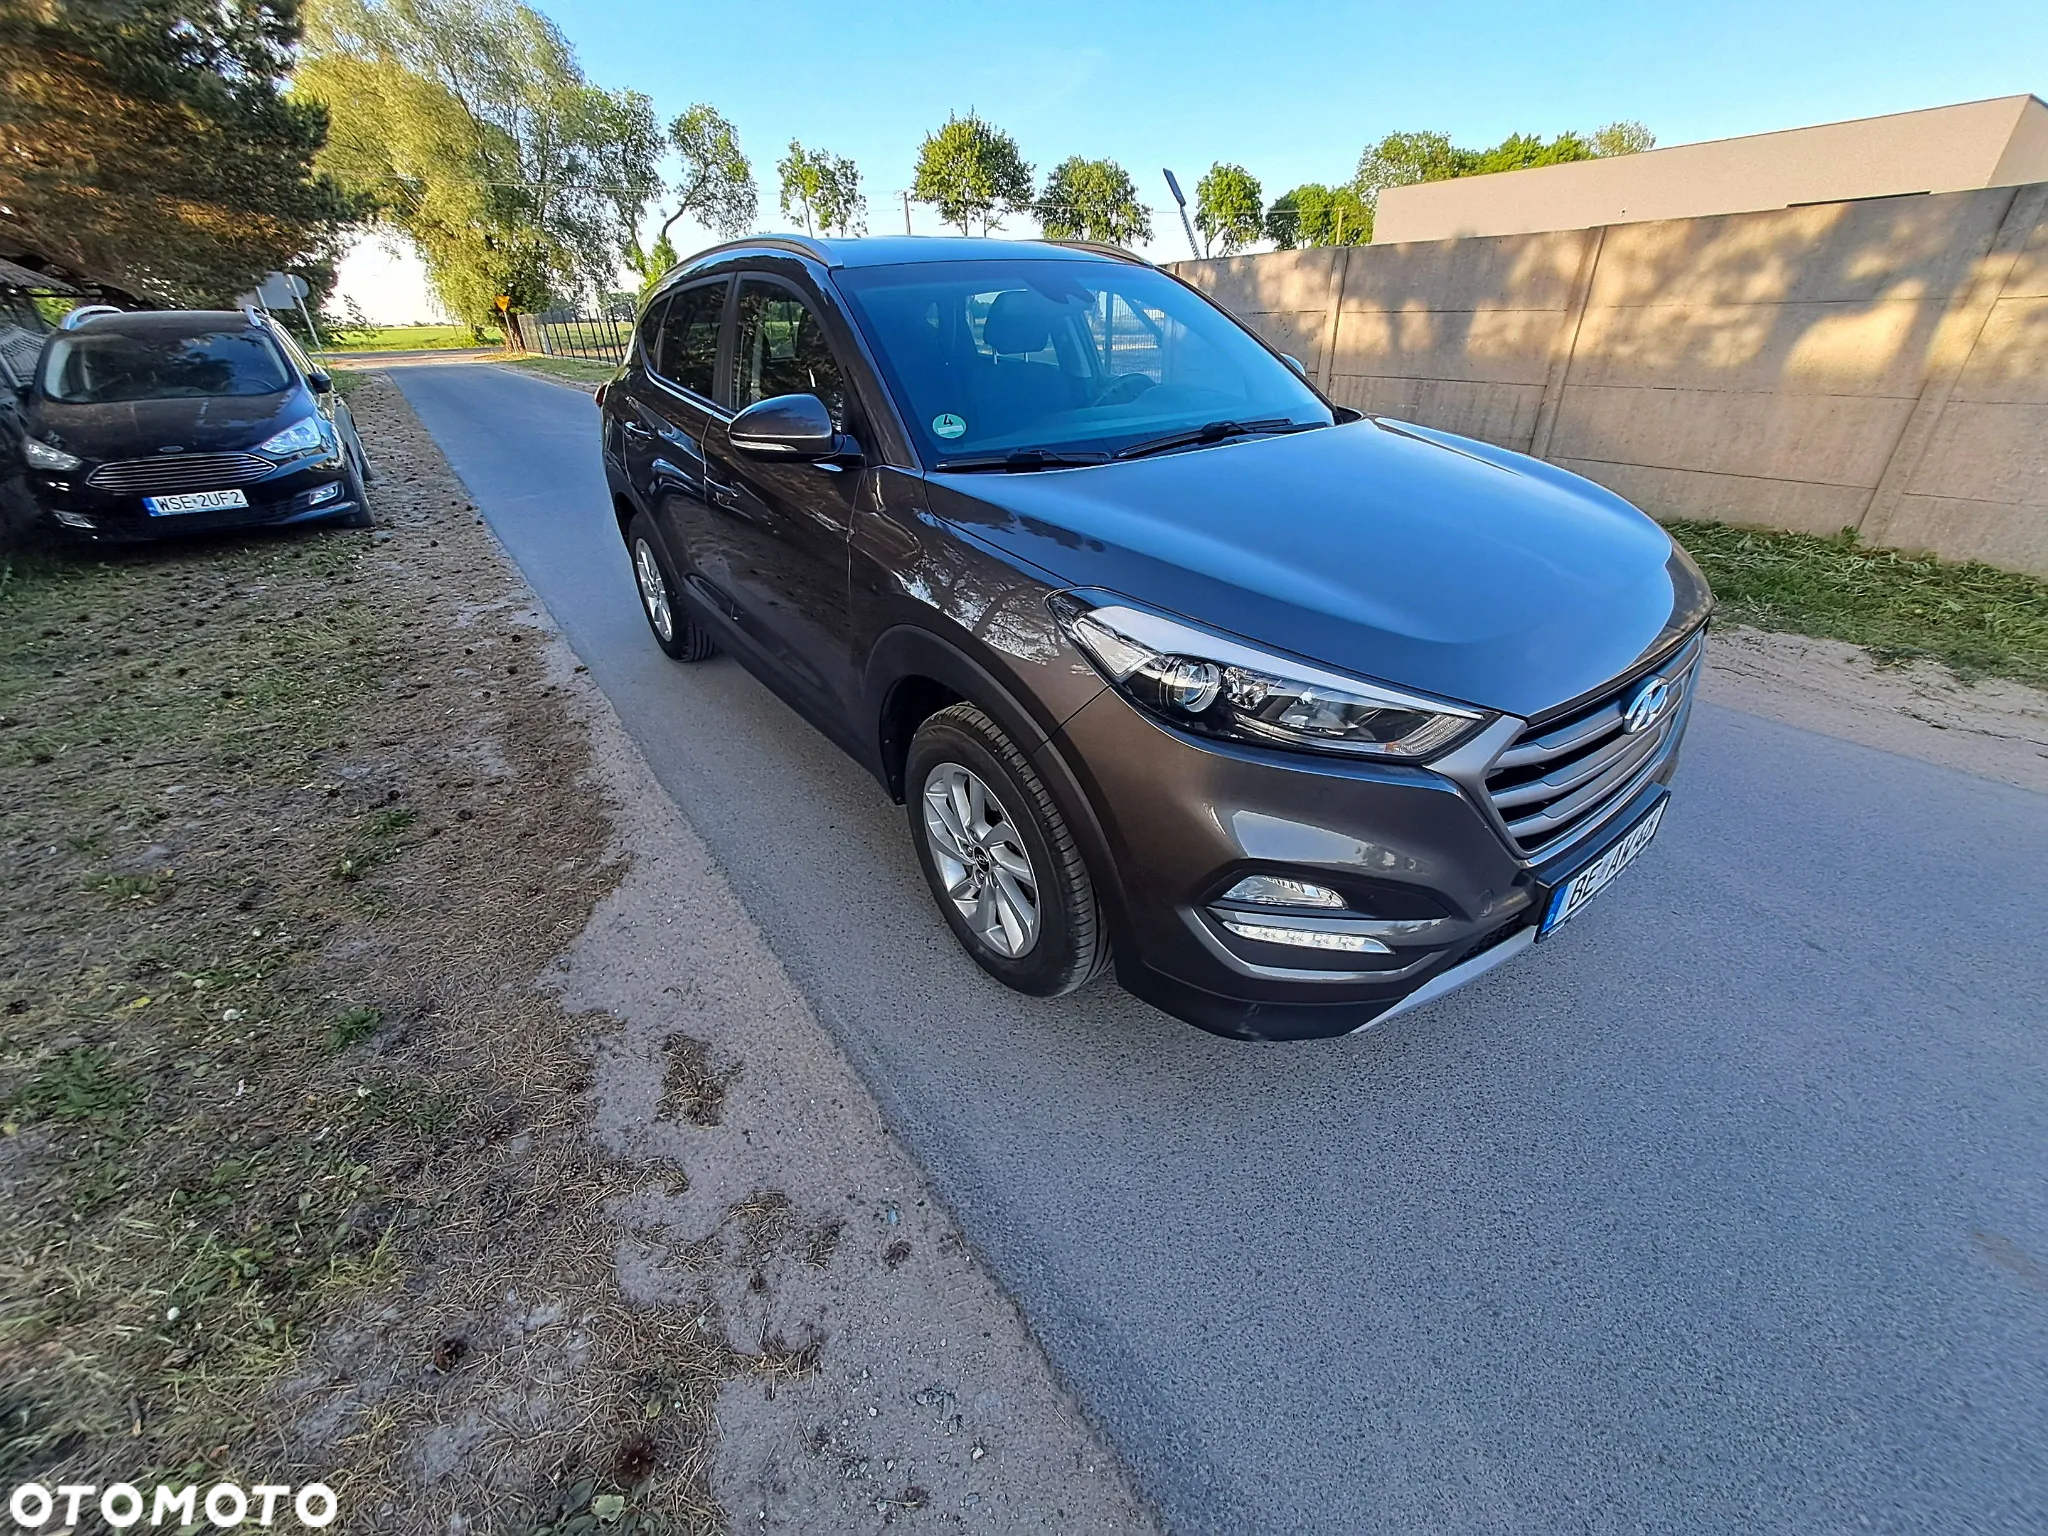 Hyundai Tucson blue 1.7 CRDi 2WD Passion Plus - 2